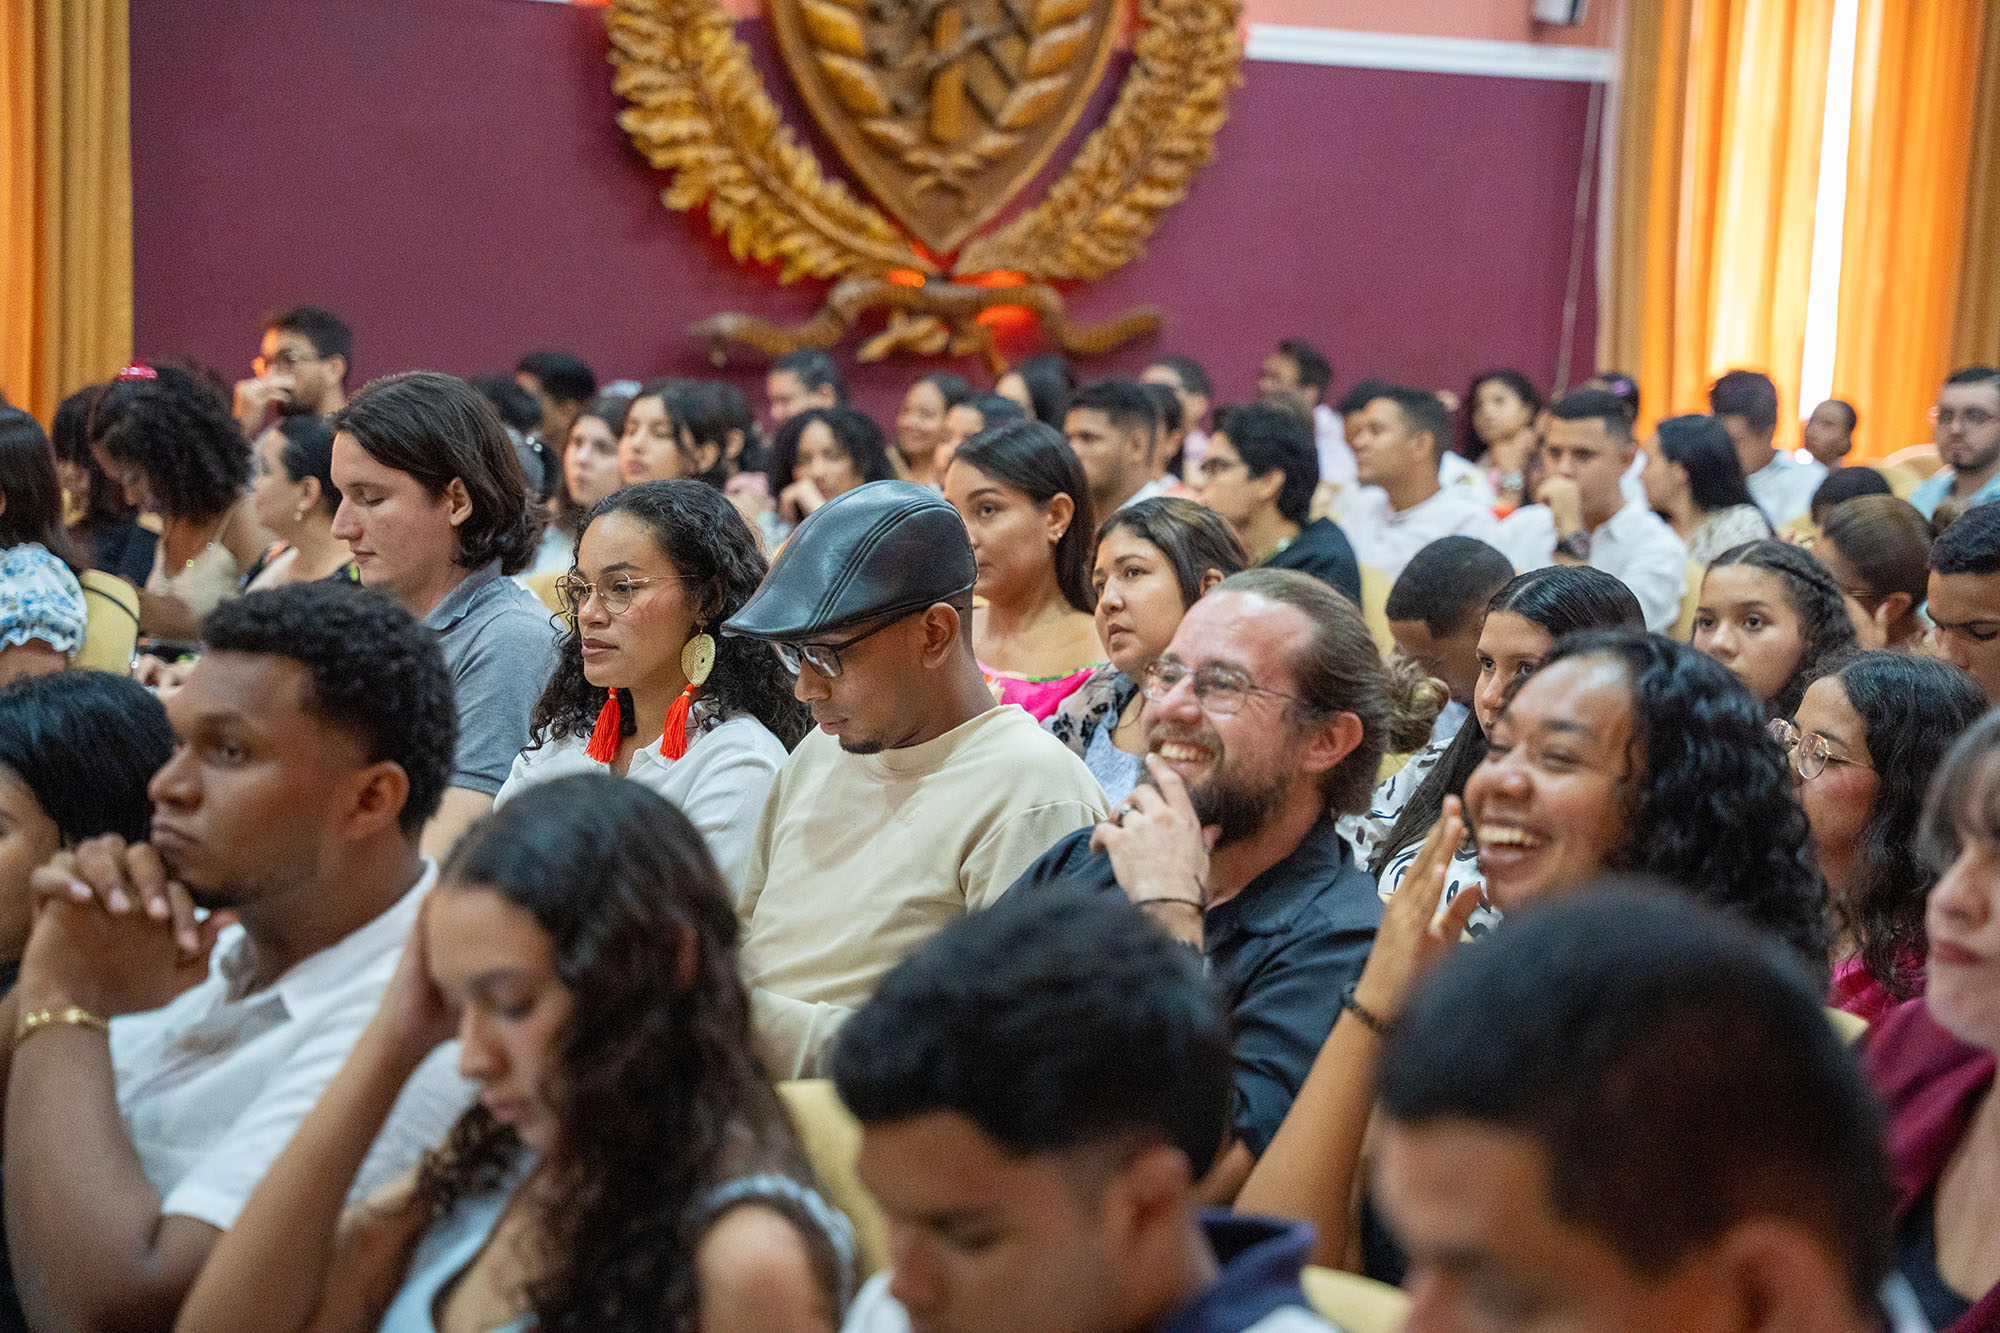 La Escuela Complutense Latinoamericana en Cartagena de Indias pone el broche final a dos semanas de intercambio y aprendizaje 